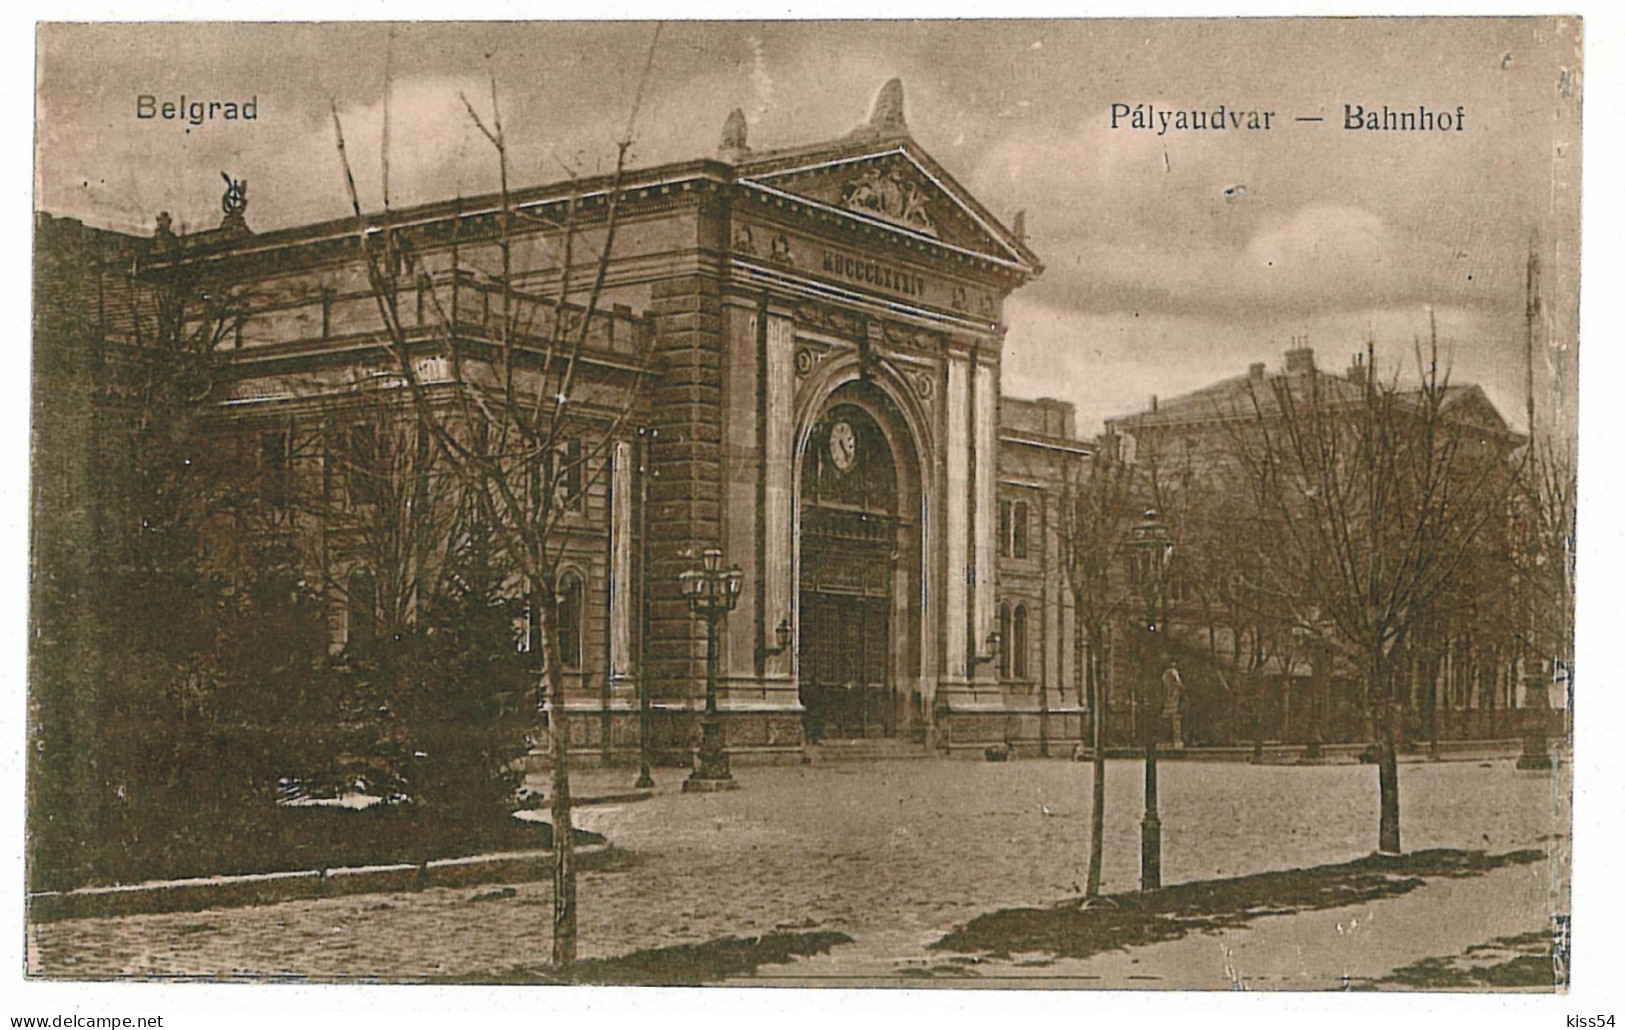 SER 5 - 5615 BELGRAD, Serbia. Railway Station - Old Postcard - Unused - Serbien